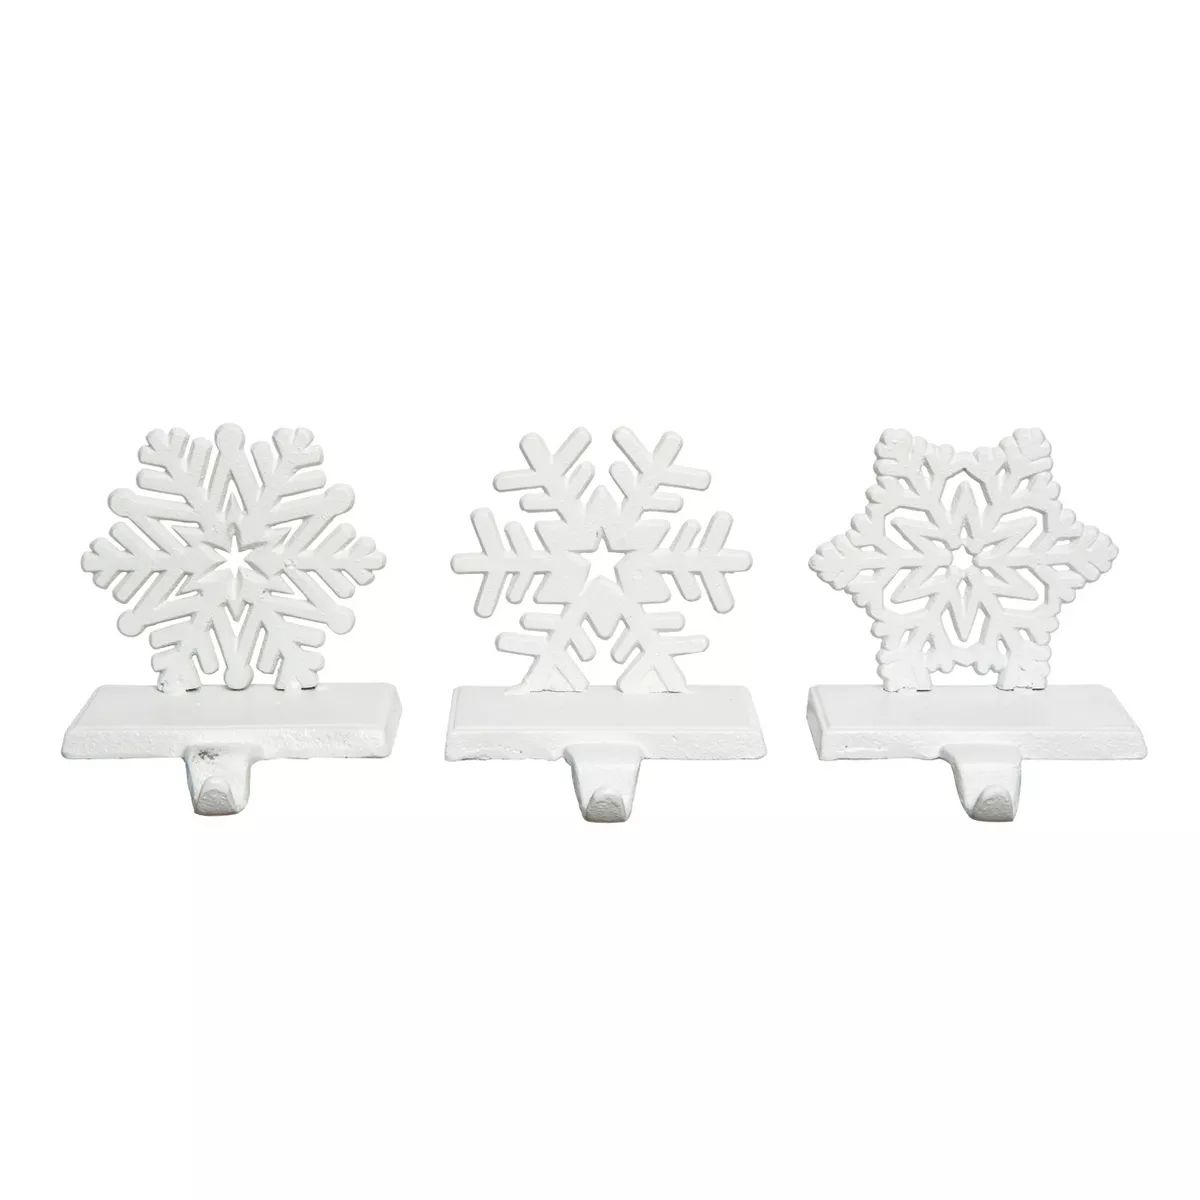 Transpac Metal 5.51 in. White Christmas Snowflake Stocking Holder Set of 3 | Target